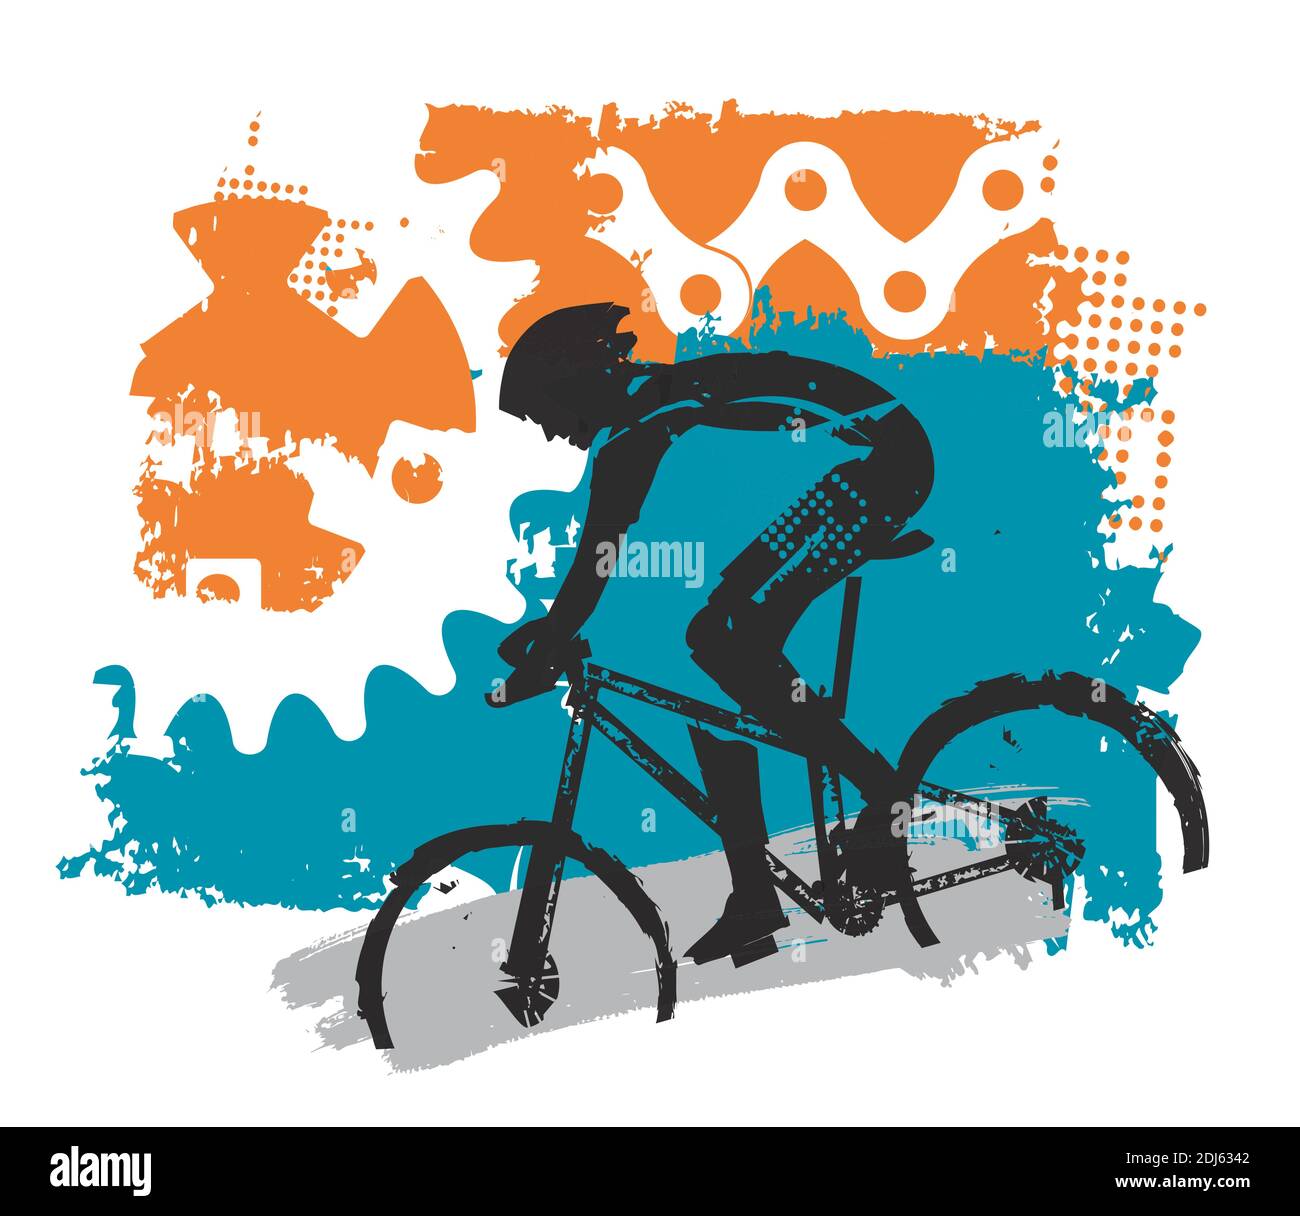 Mountainbike, Radfahrer und Fahrradteile bacground. Bunte Grunge stilisierte Illustration mit Radfahrer und Fahrrad Teile. Vektor verfügbar. Stock Vektor